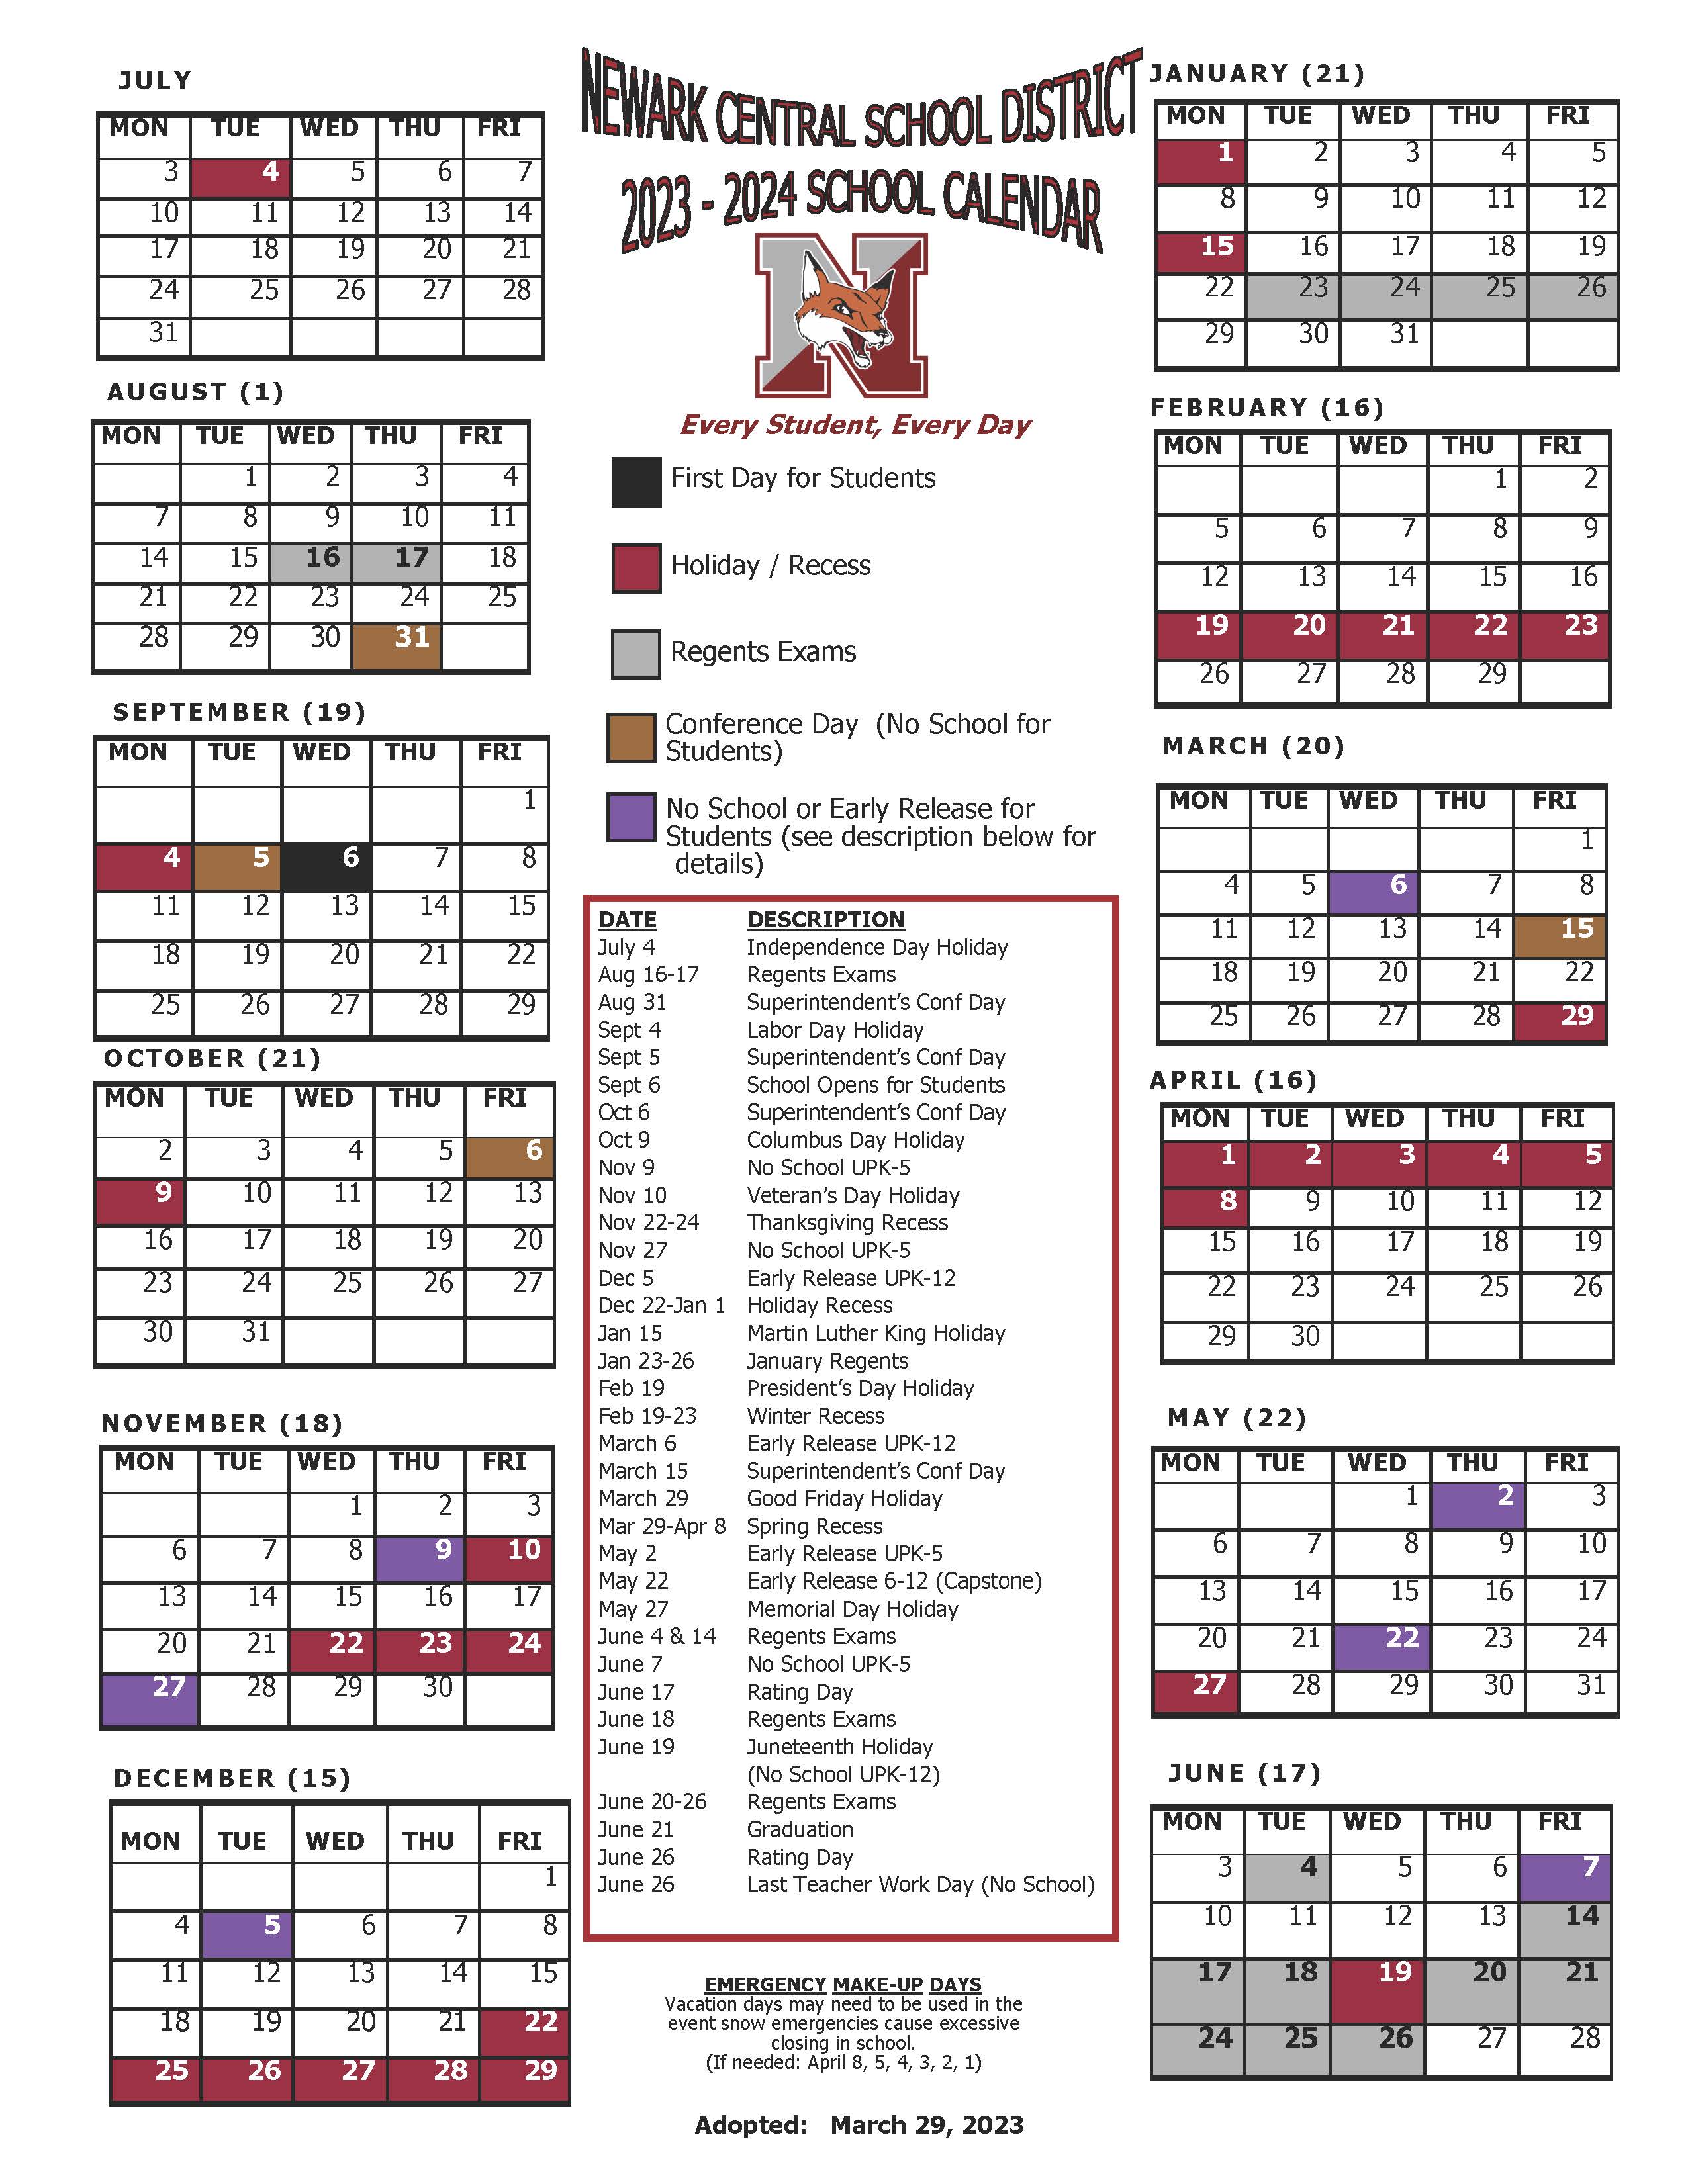 Instructional Calendar Newark Central School District